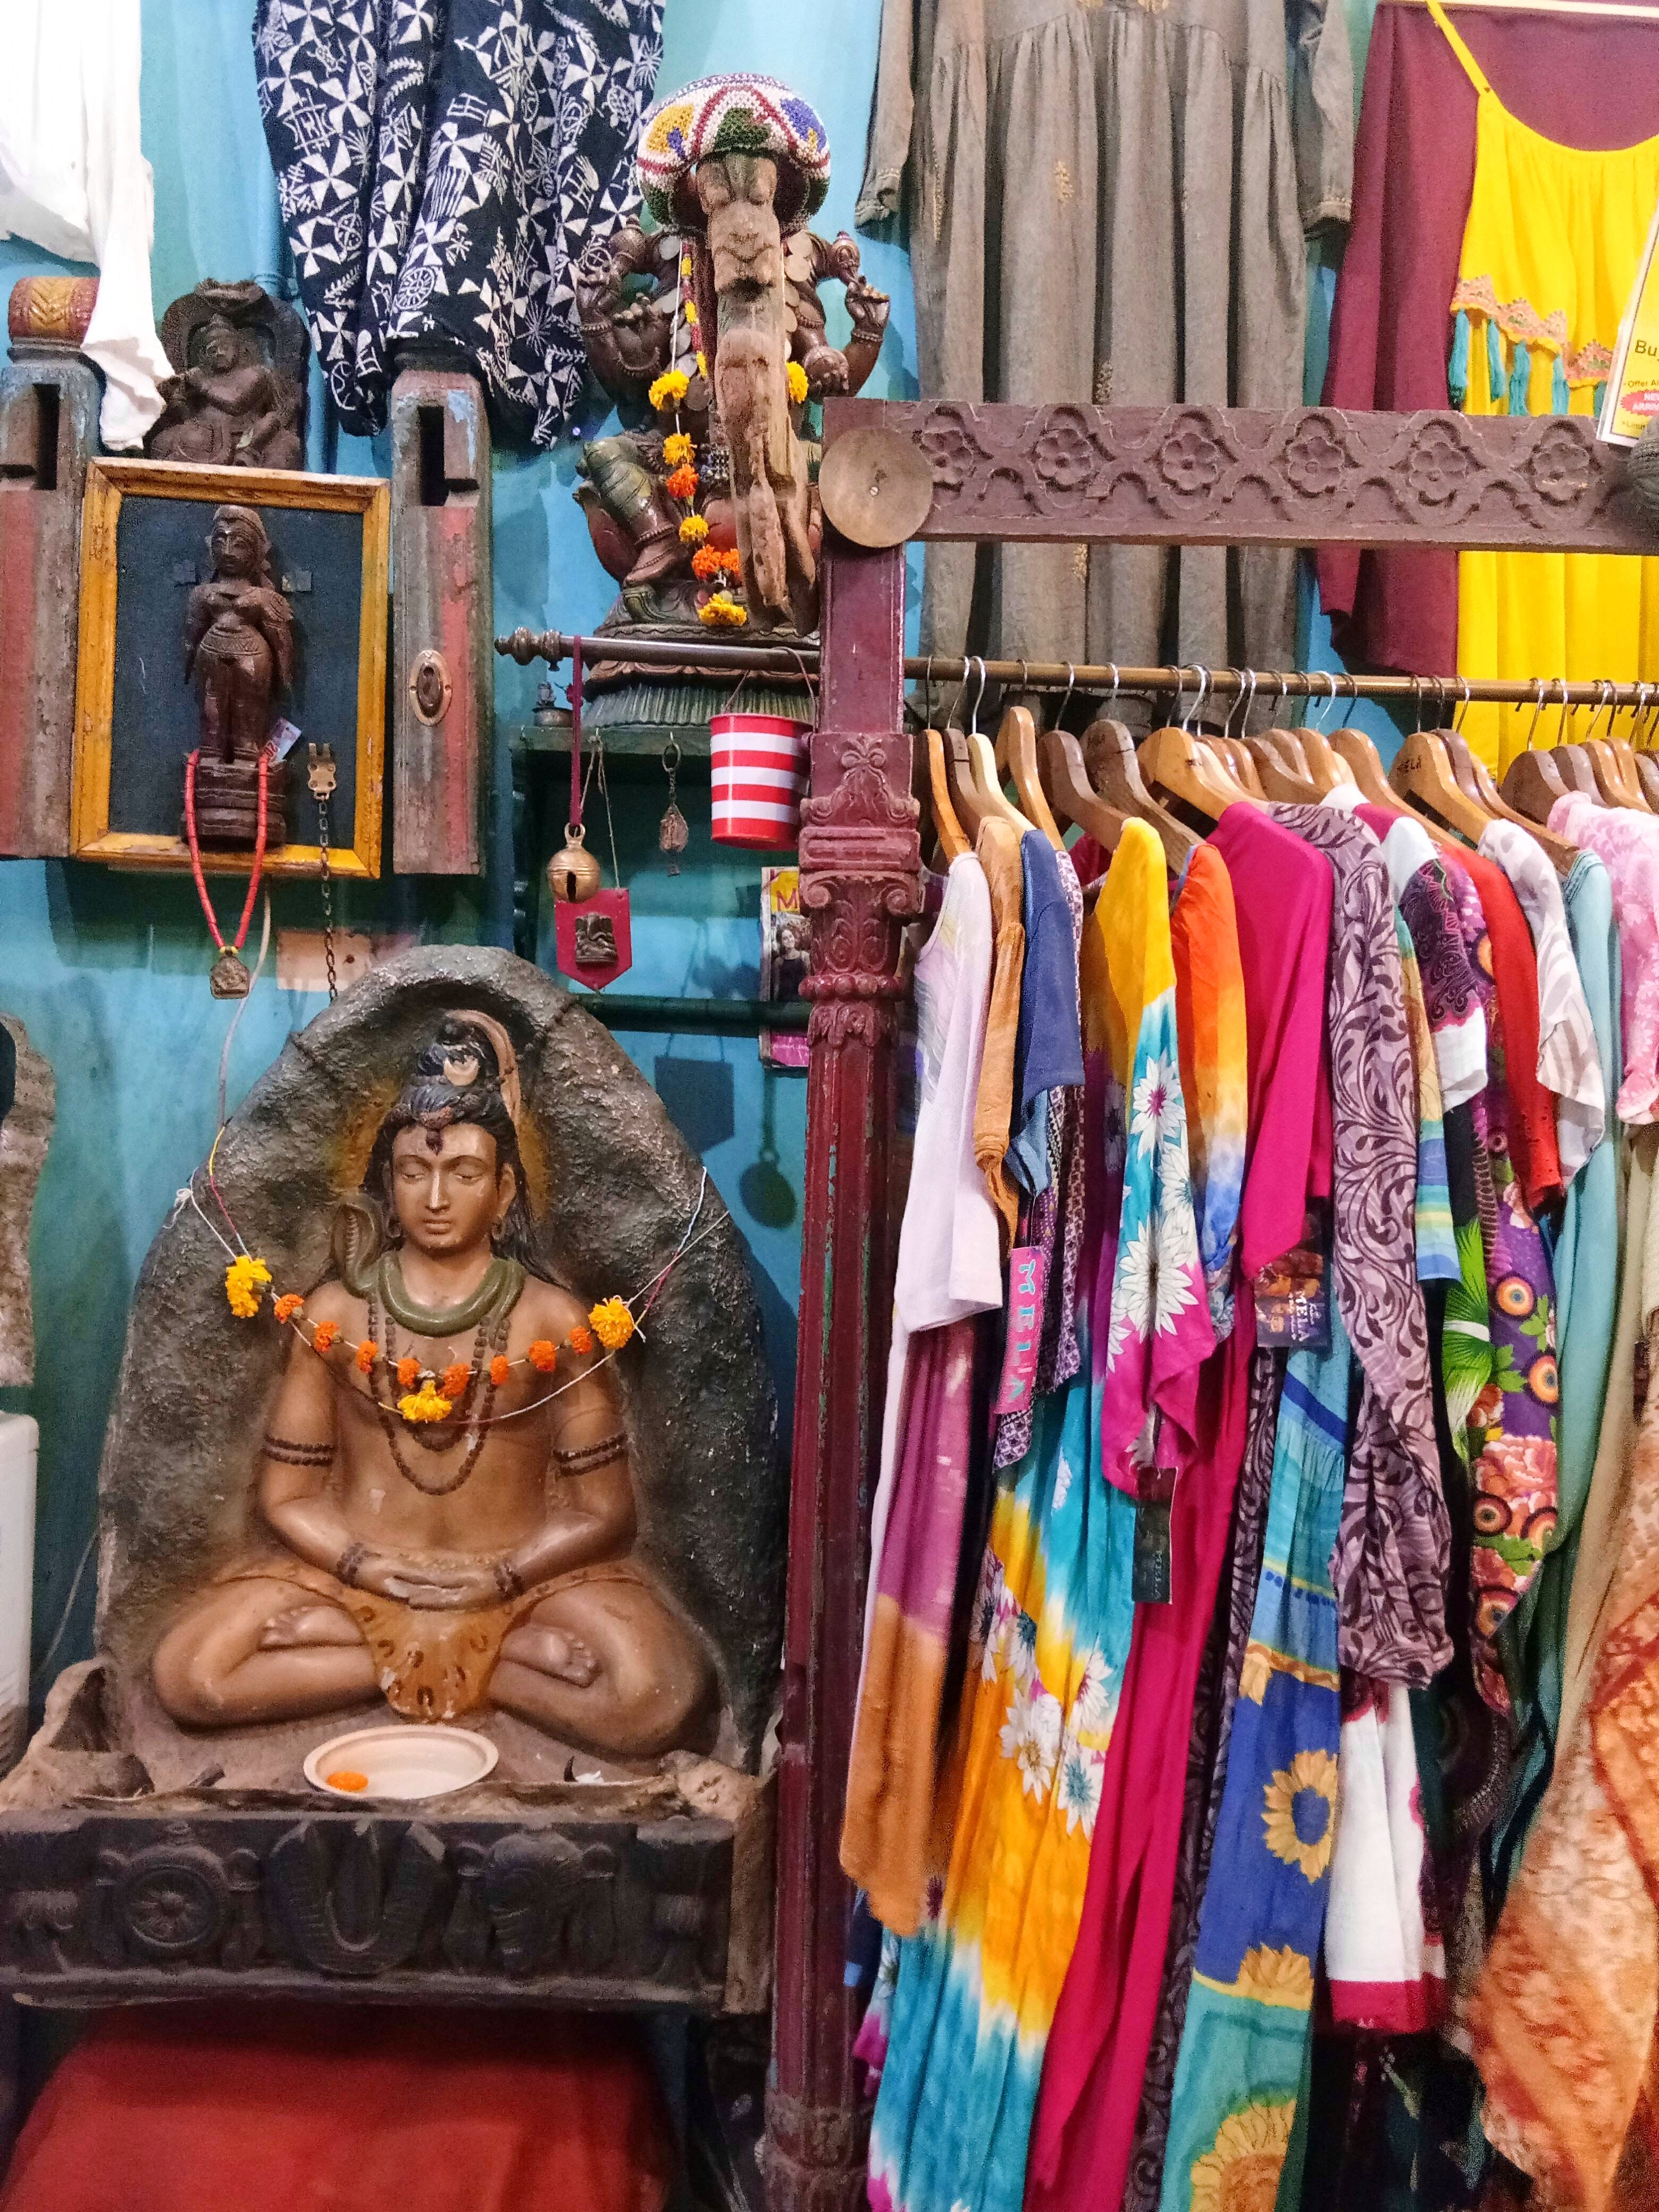 Selling,Textile,Bazaar,Market,Temple,Tourism,Marketplace,Boutique,Art,Hindu temple